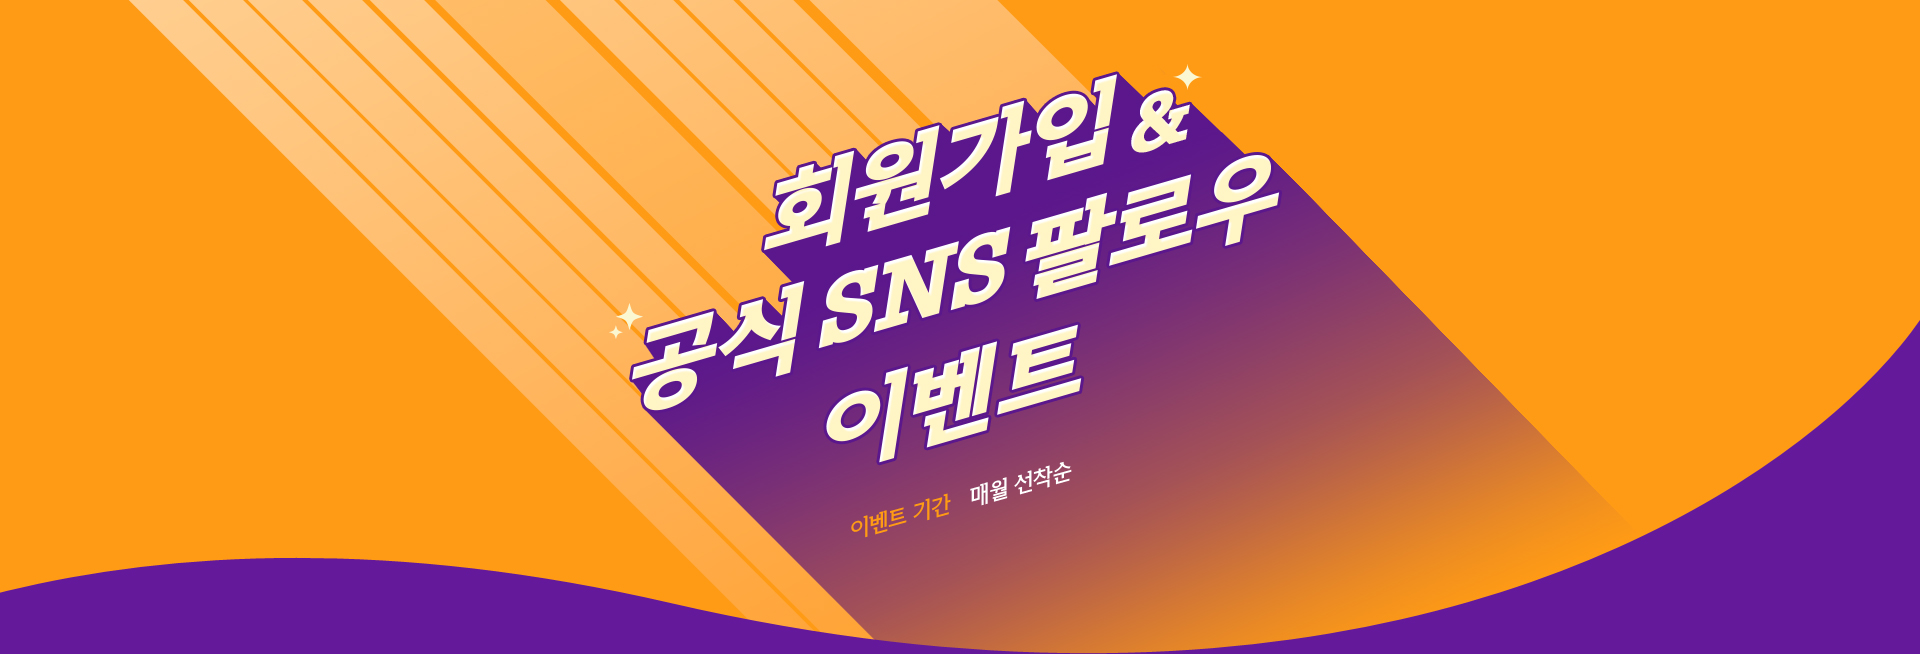 회원가입 & 공식 SNS 팔로우 이벤트